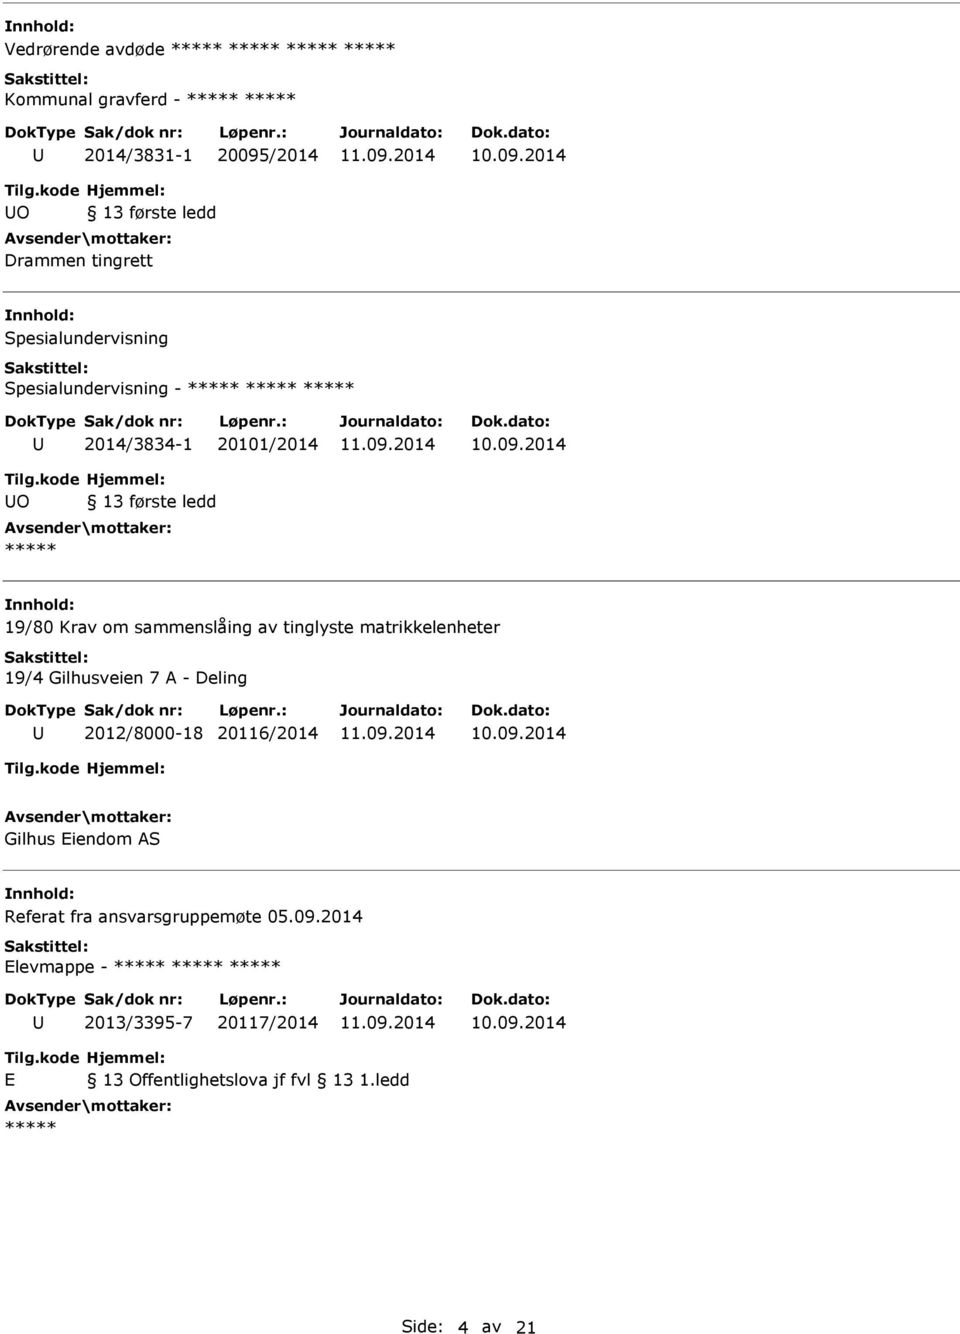 sammenslåing av tinglyste matrikkelenheter 19/4 Gilhusveien 7 A - Deling 2012/8000-18 20116/2014